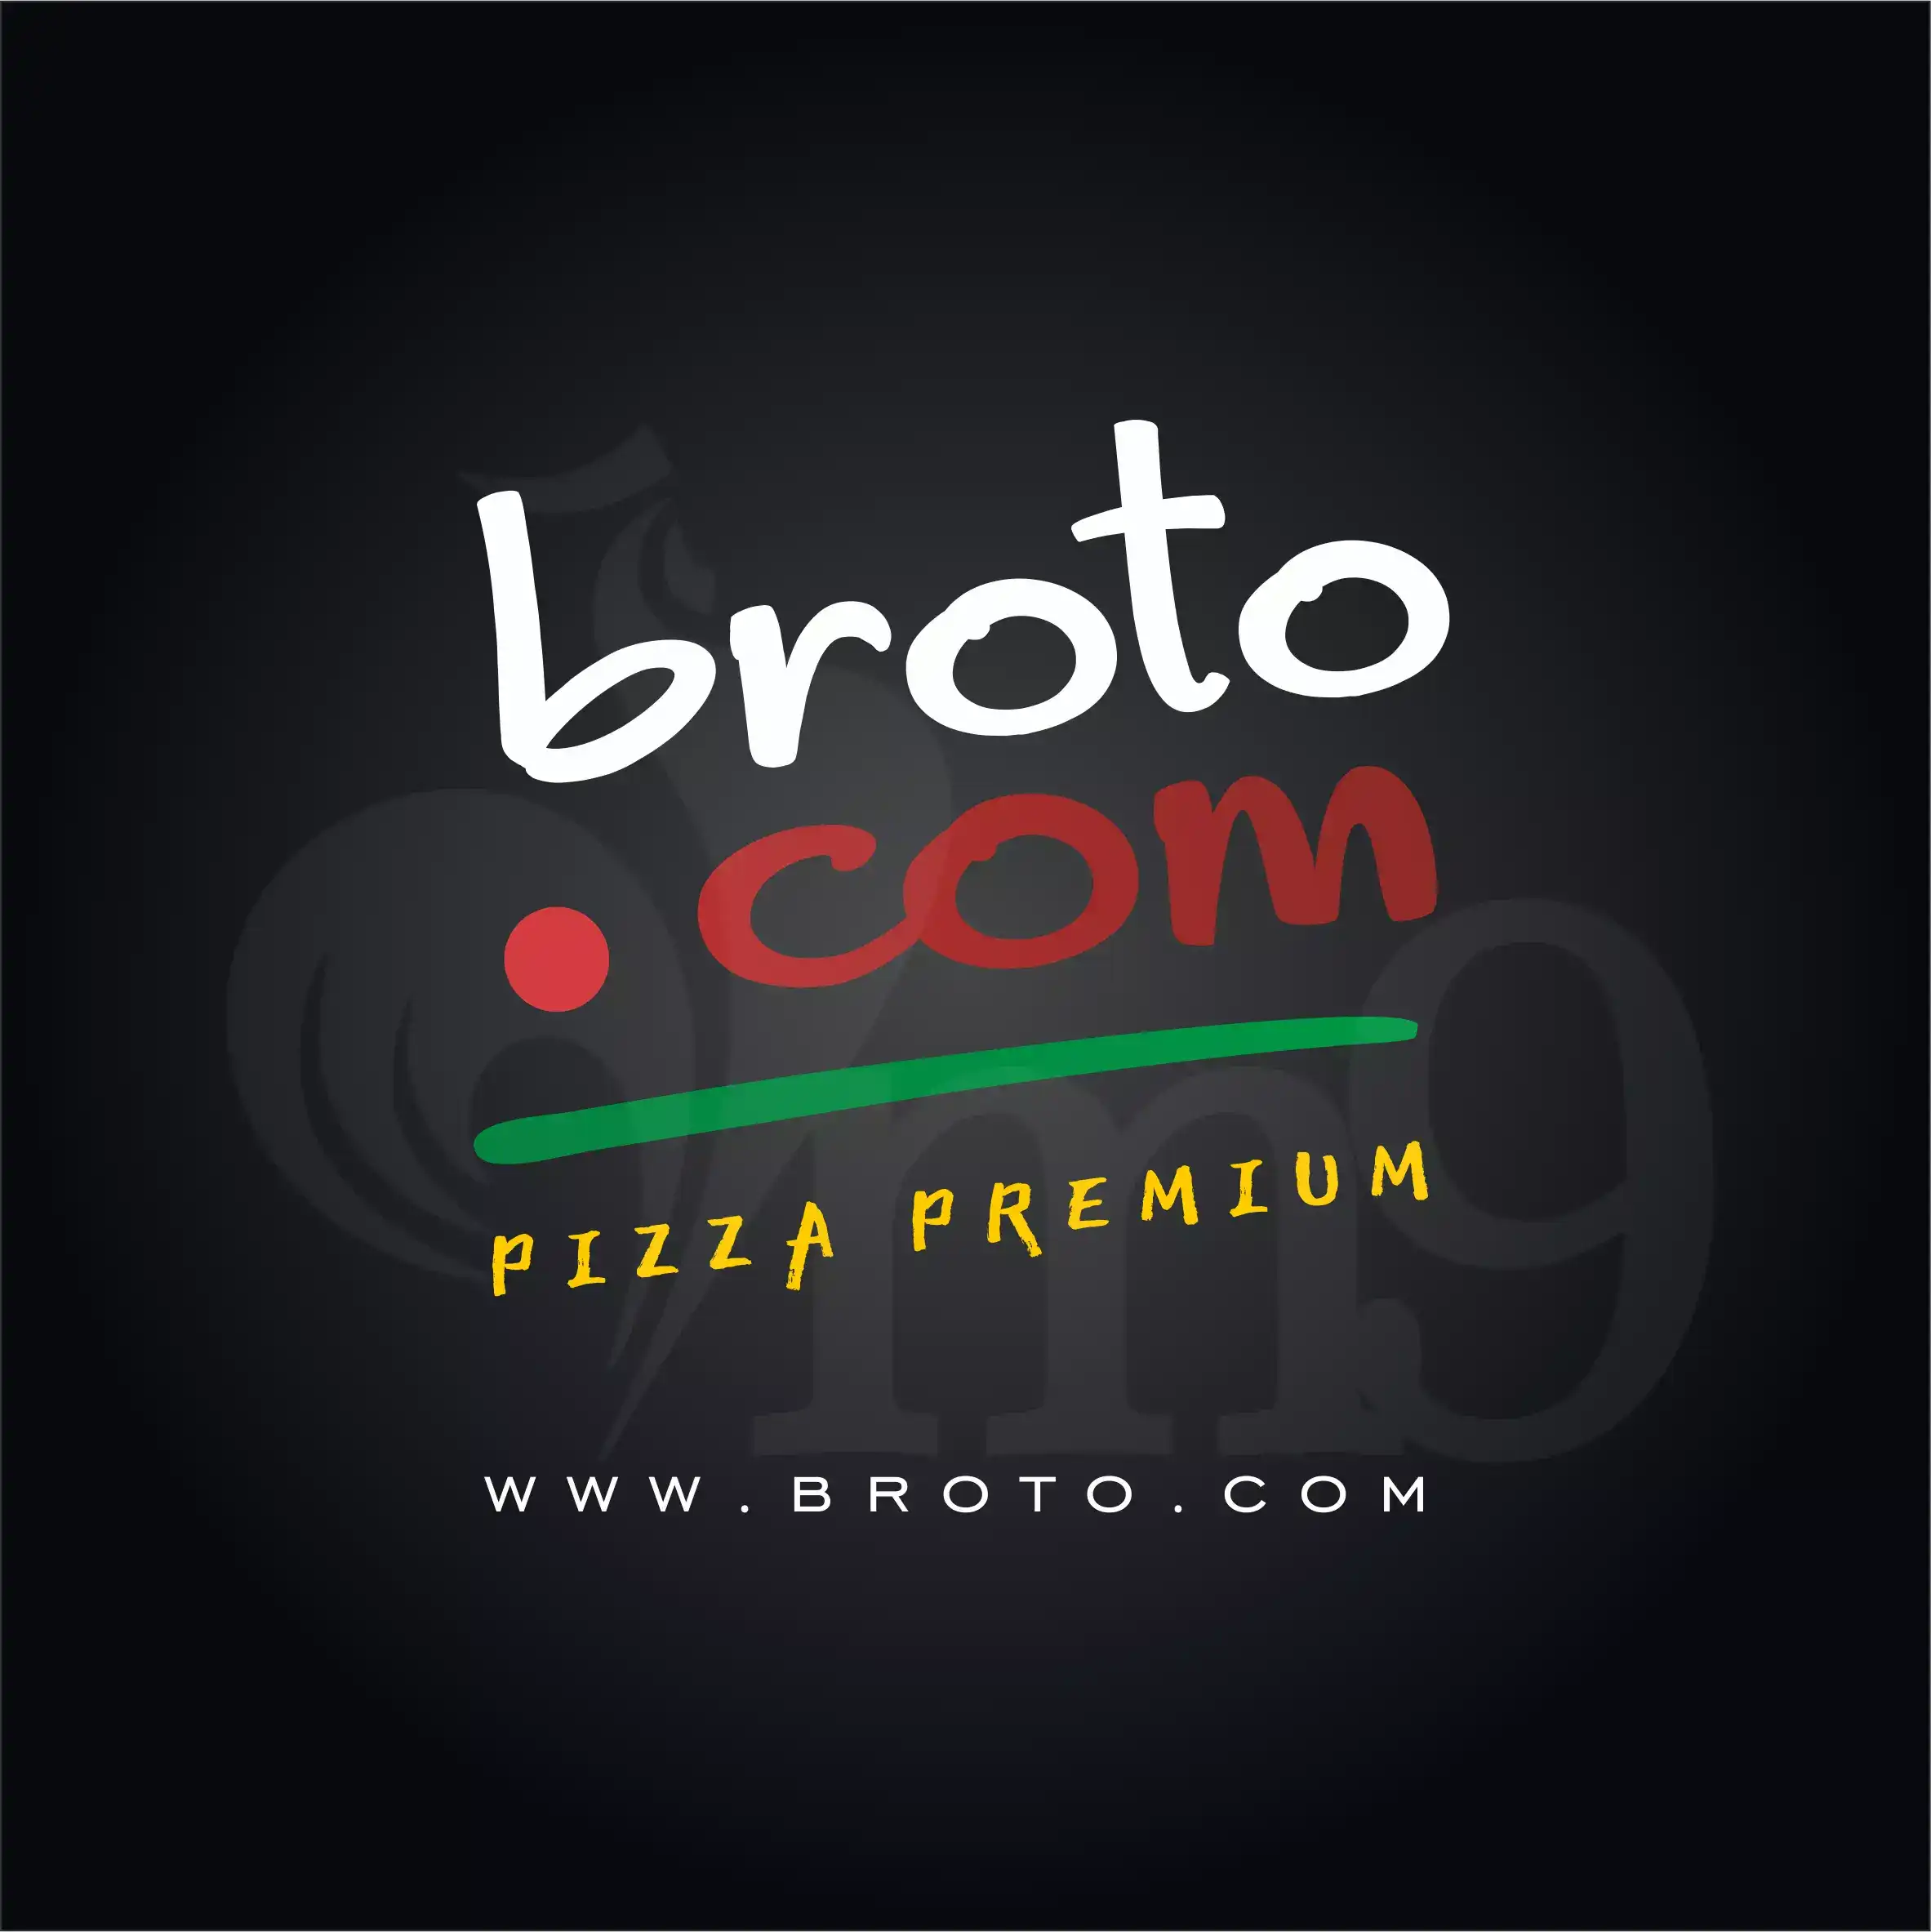 
Logo Logotipo Logomarca Pizzaria Pizza Premium Delivery



